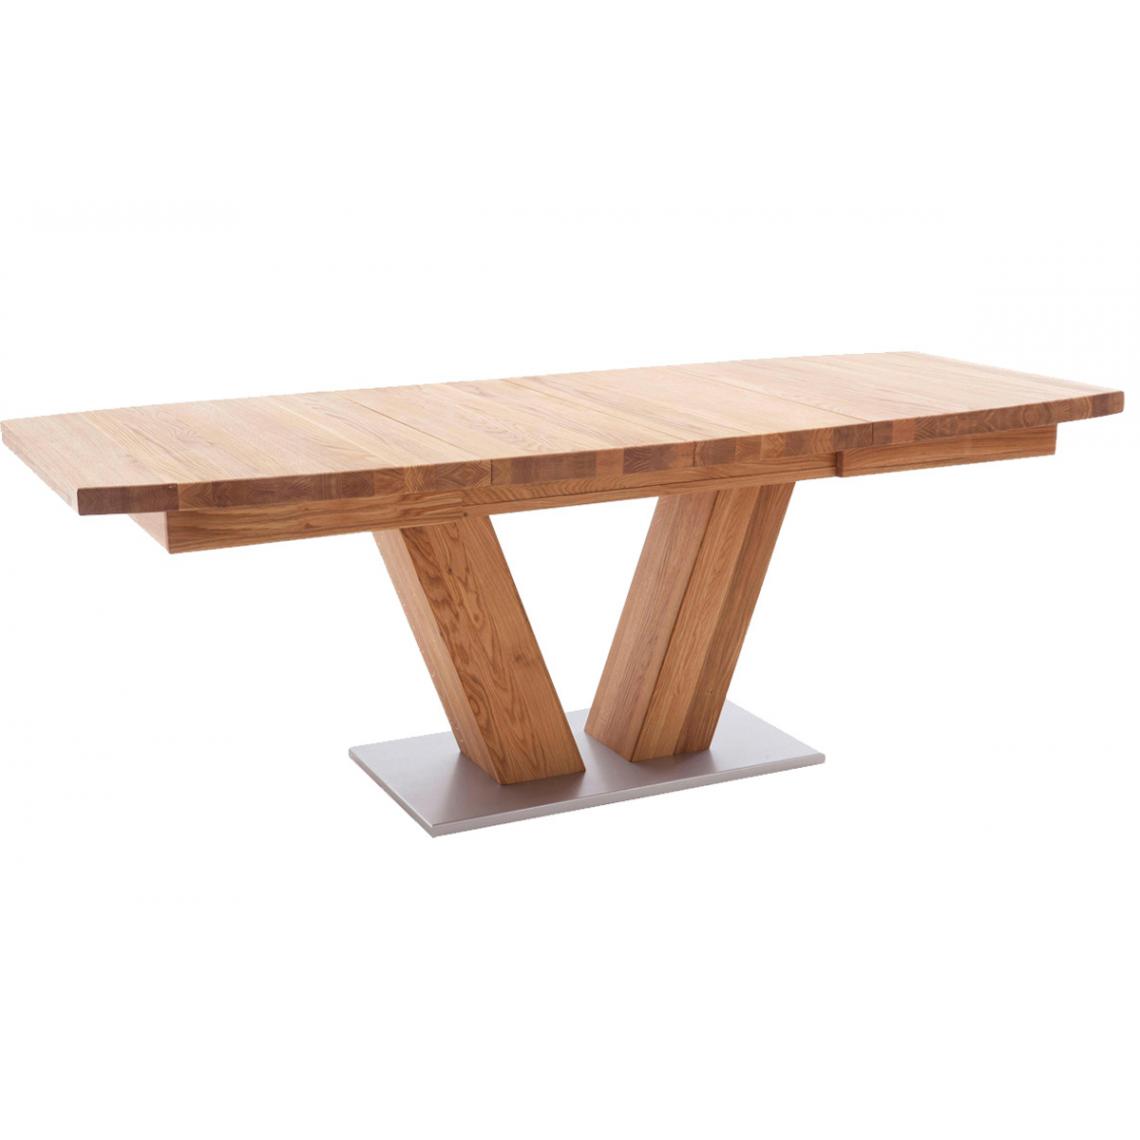 Pegane - Table à manger extensible en chêne sauvage massif - Longueur 140-220 x Hauteur 78 x Profondeur 90 cm - Tables à manger